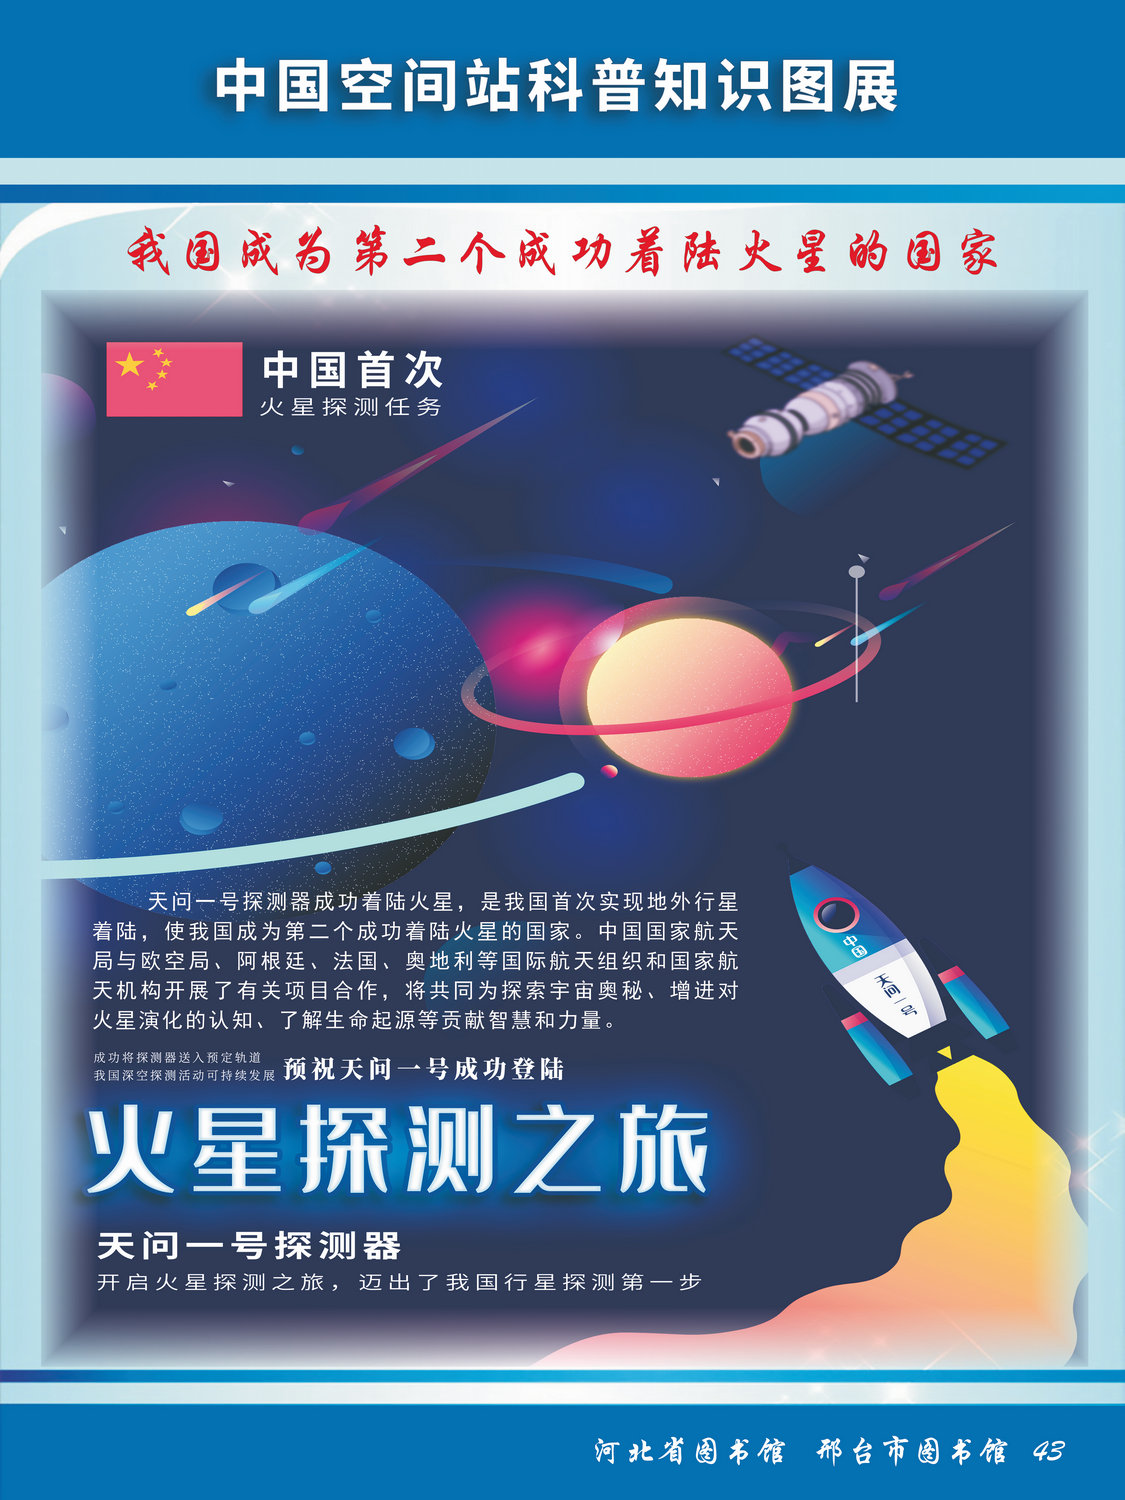 中国空间站科普知识图文展_图43